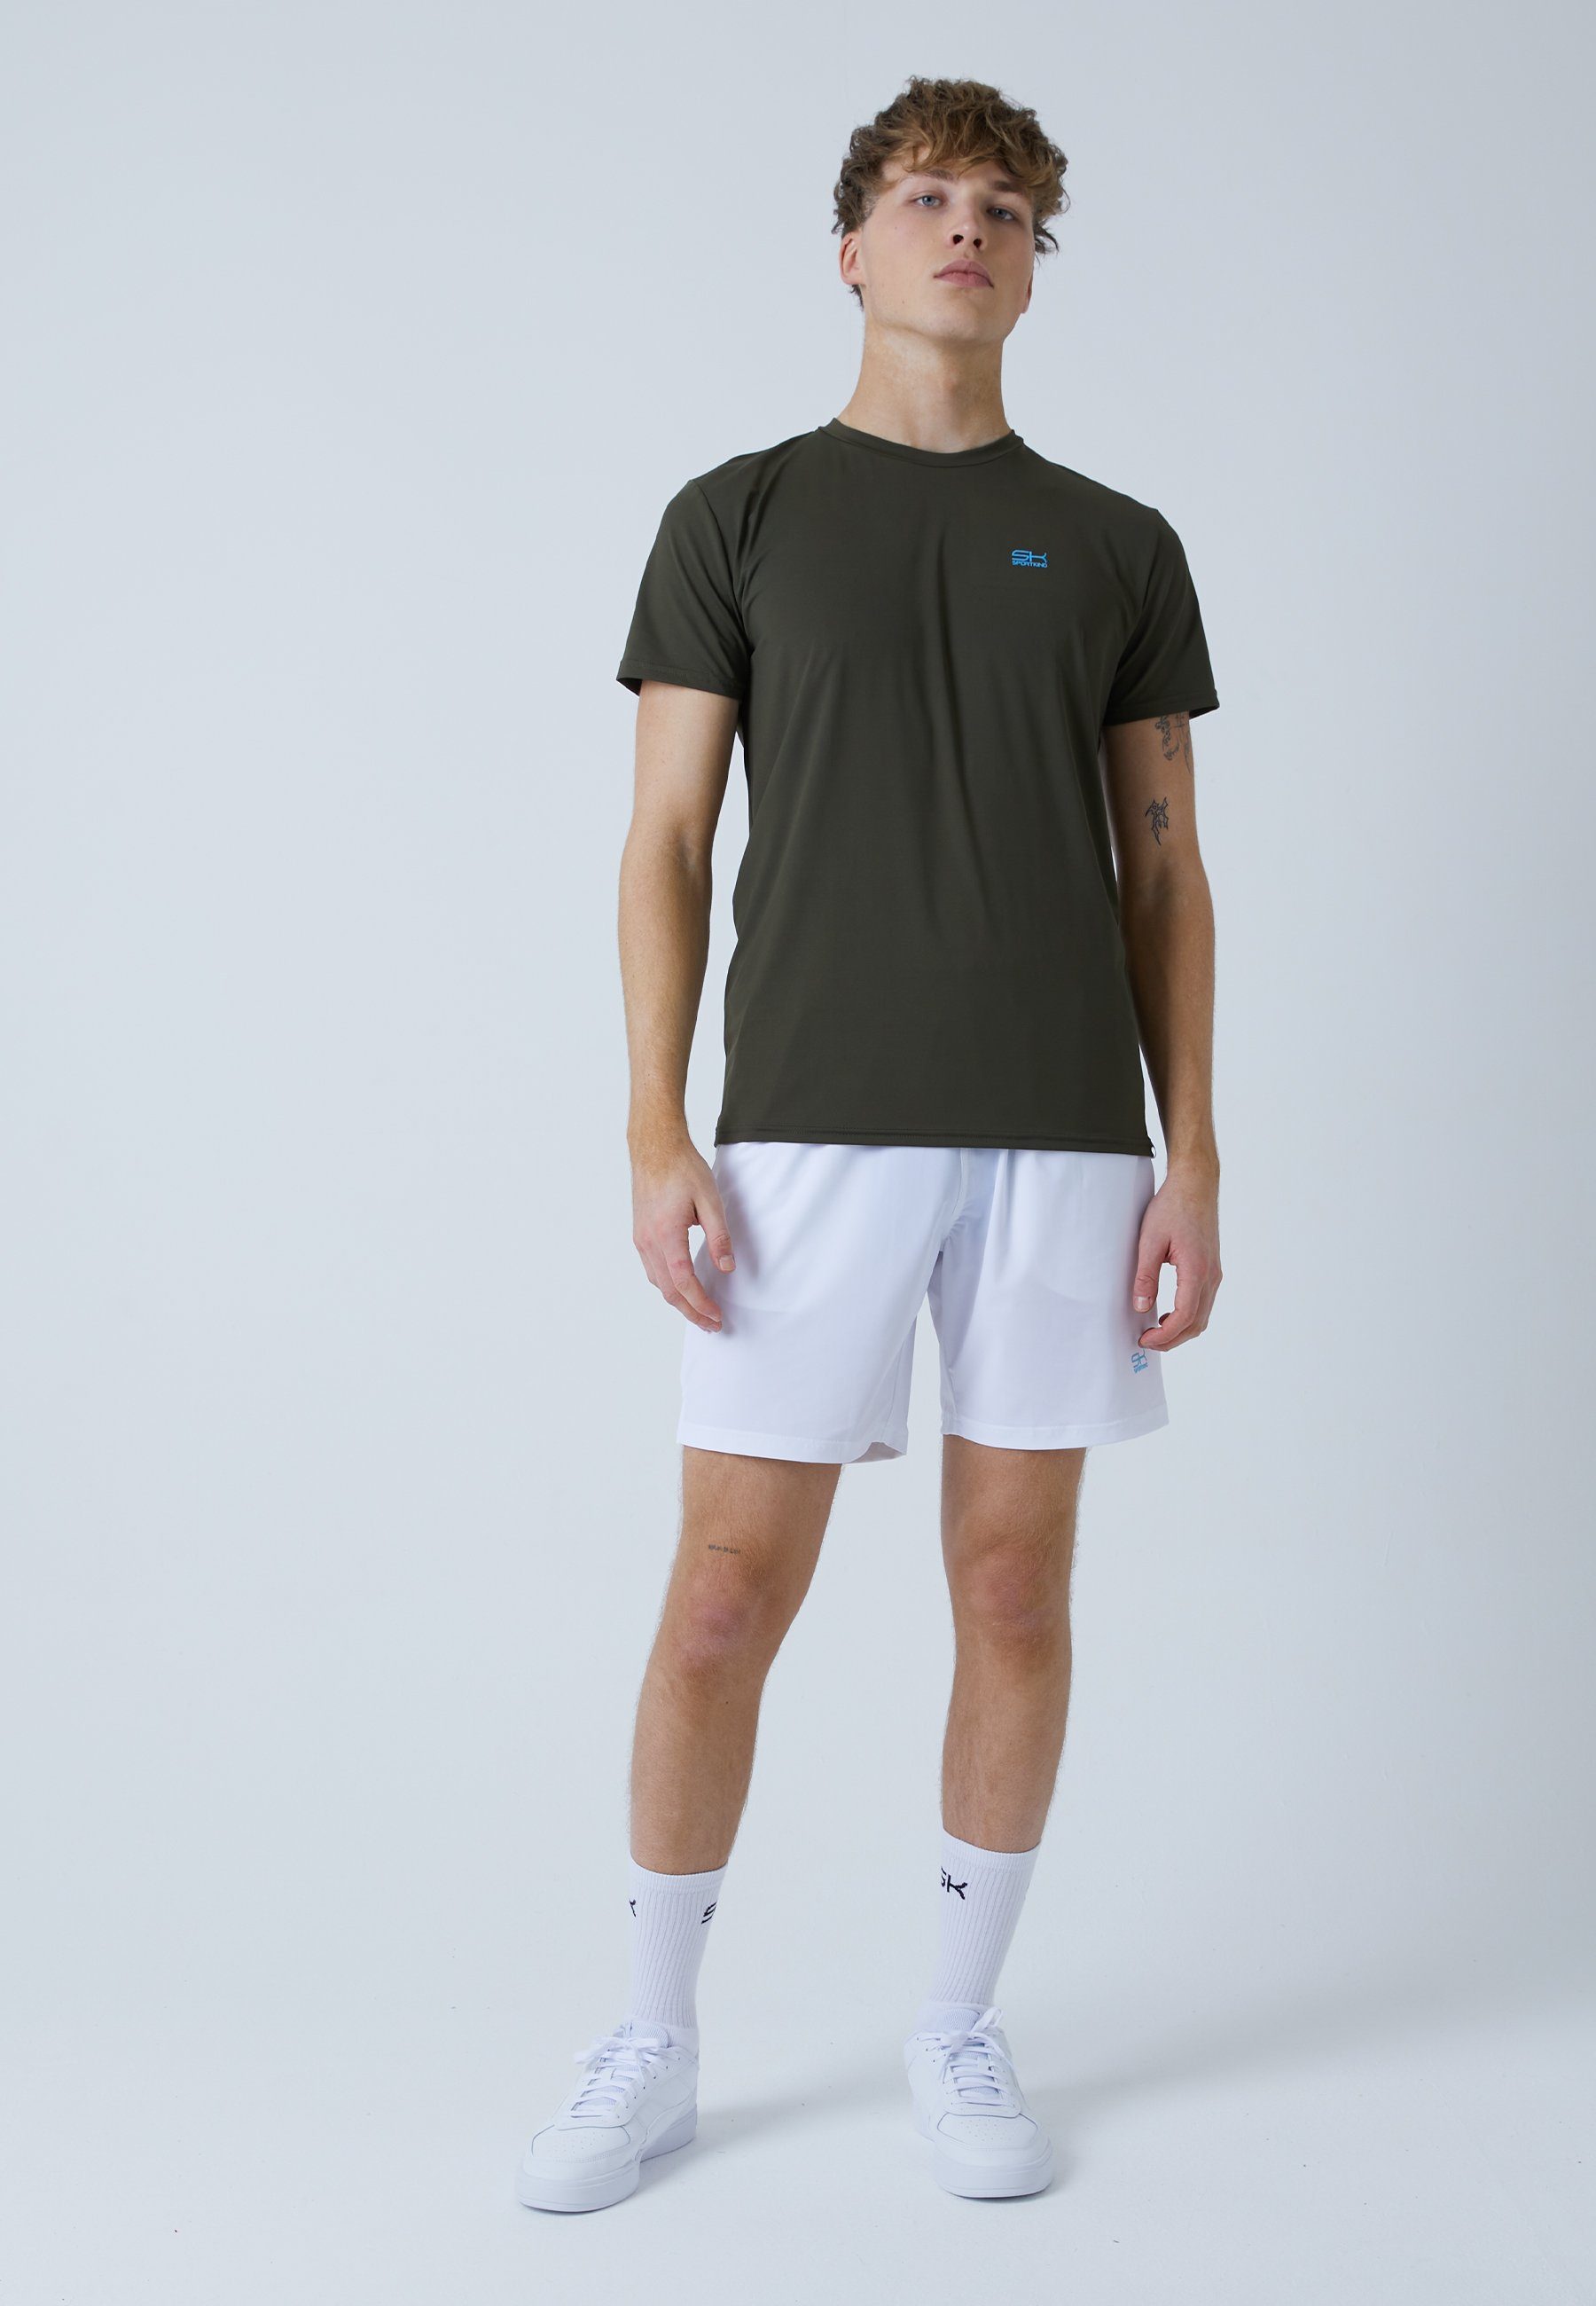 T-Shirt Tennis Rundhals Herren SPORTKIND & khaki Funktionsshirt Jungen